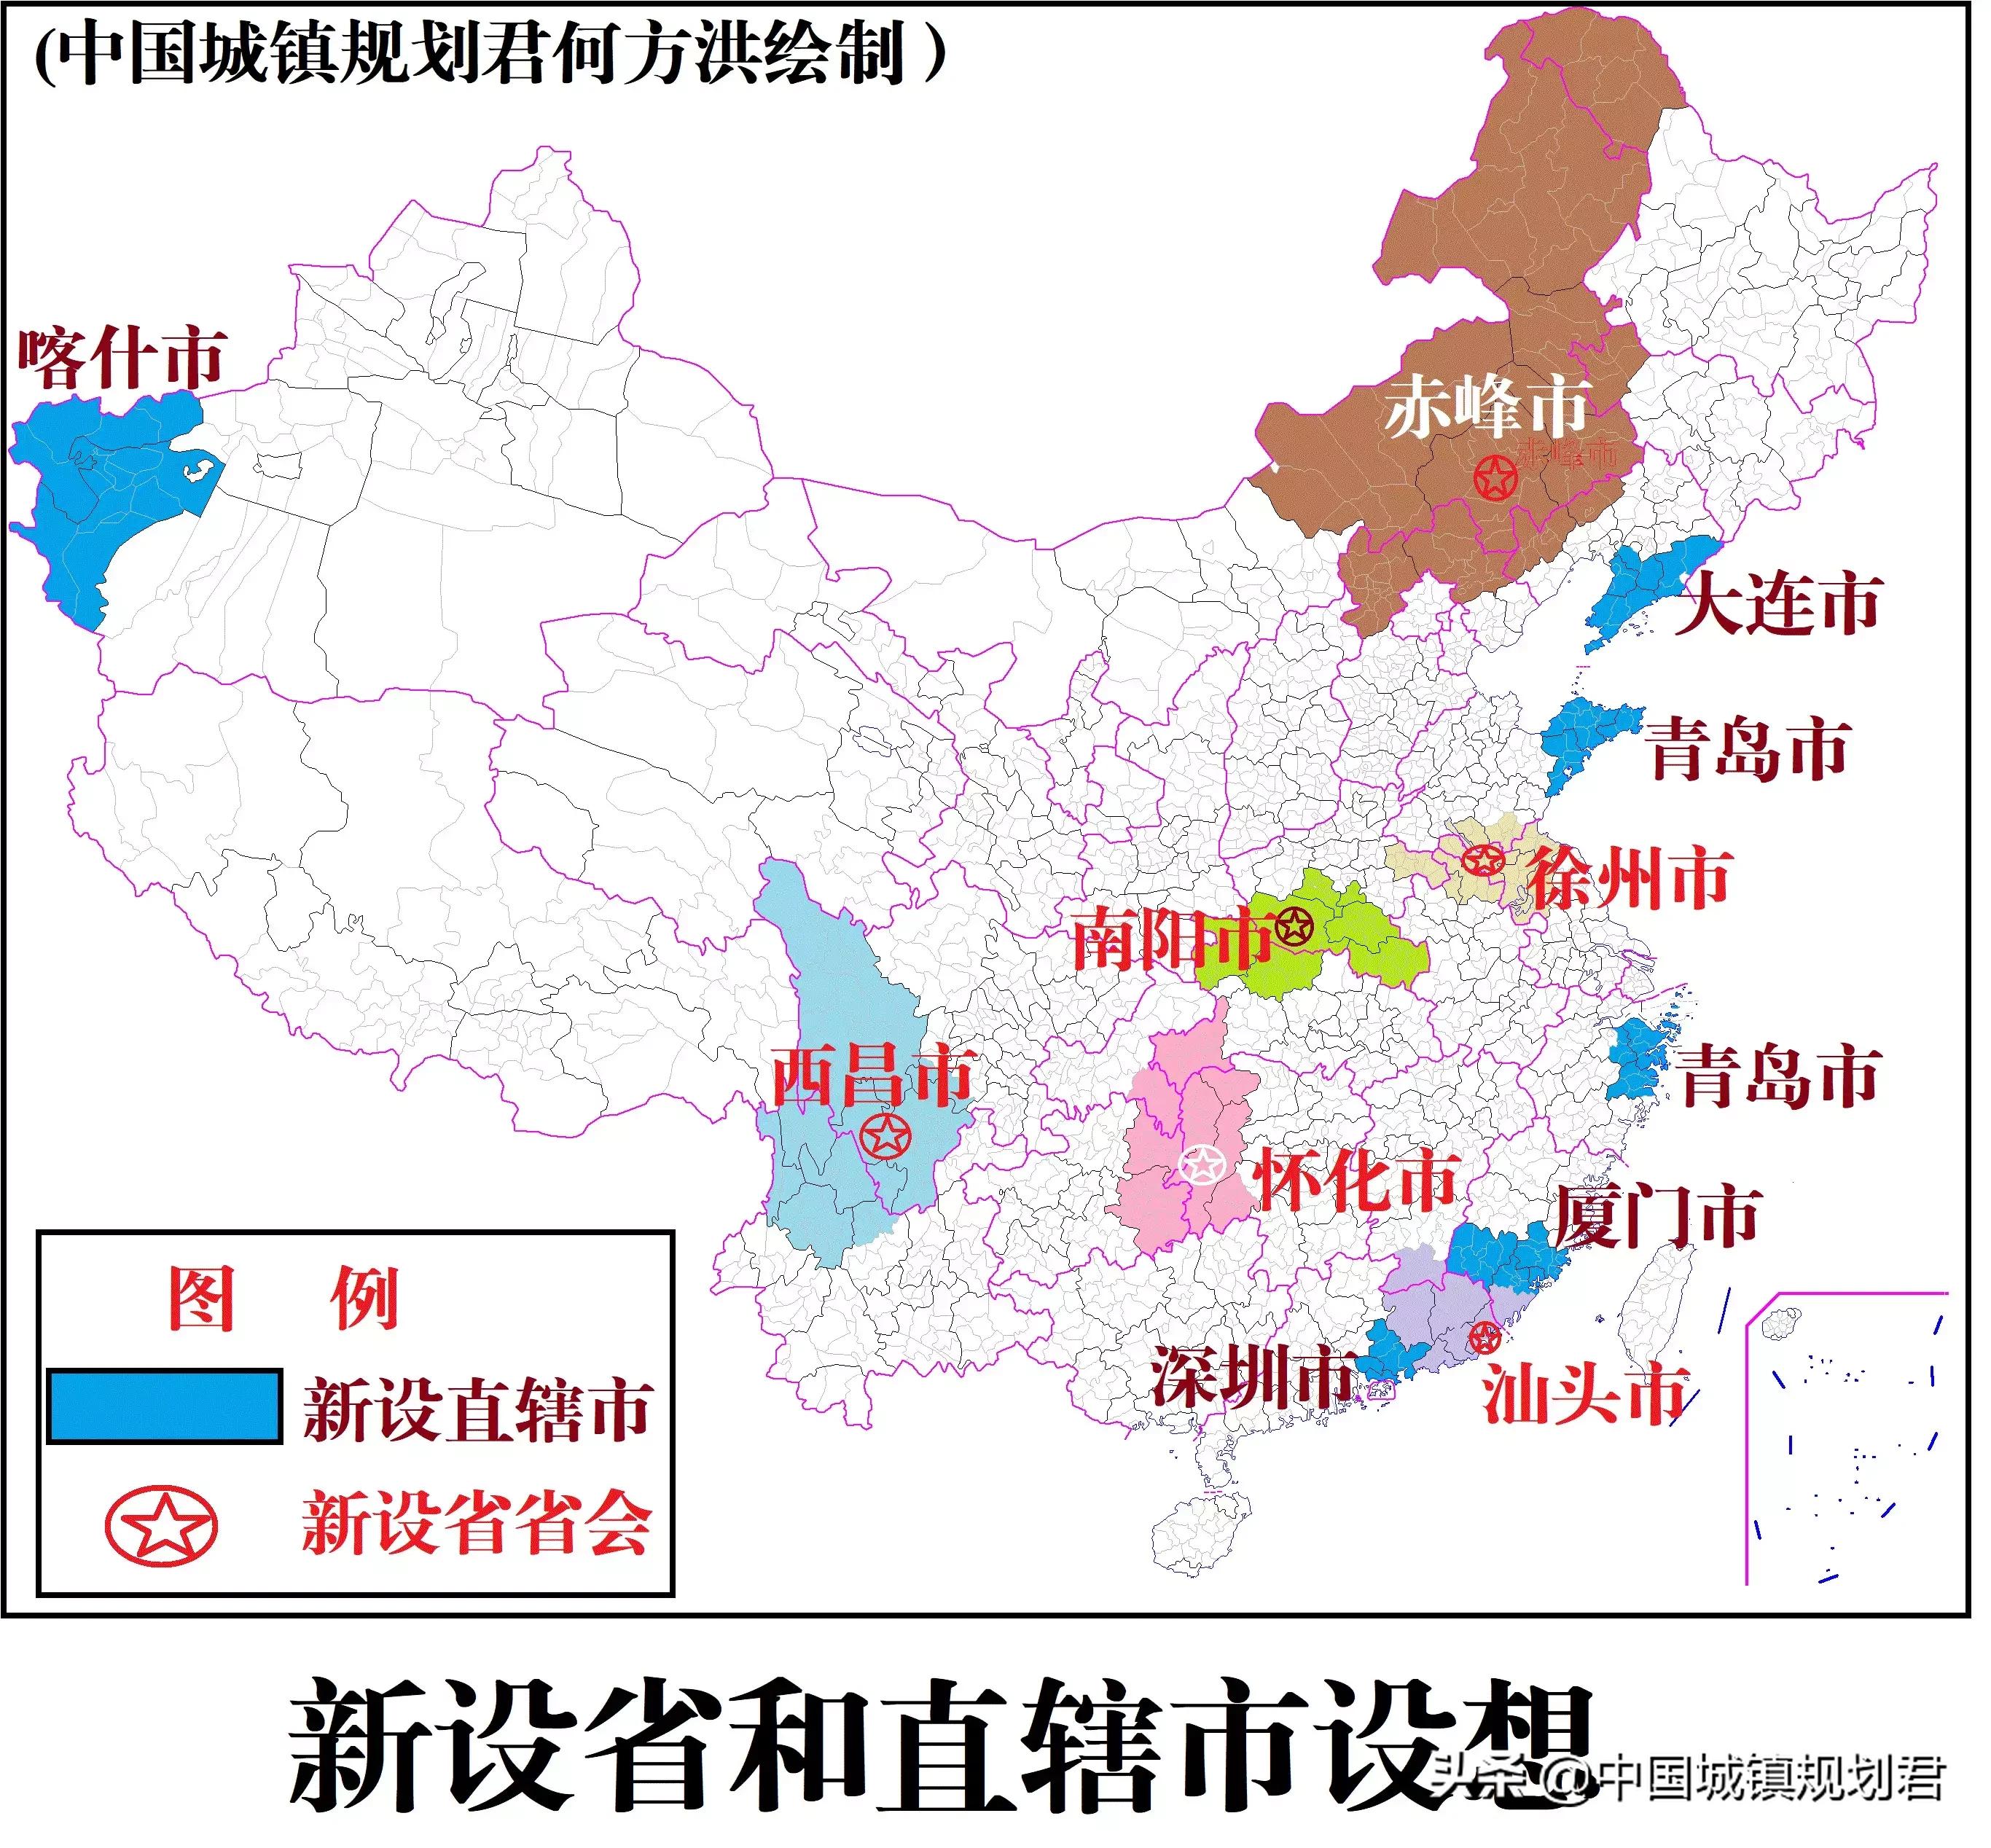 中国有多少个省 最出人才的三大省